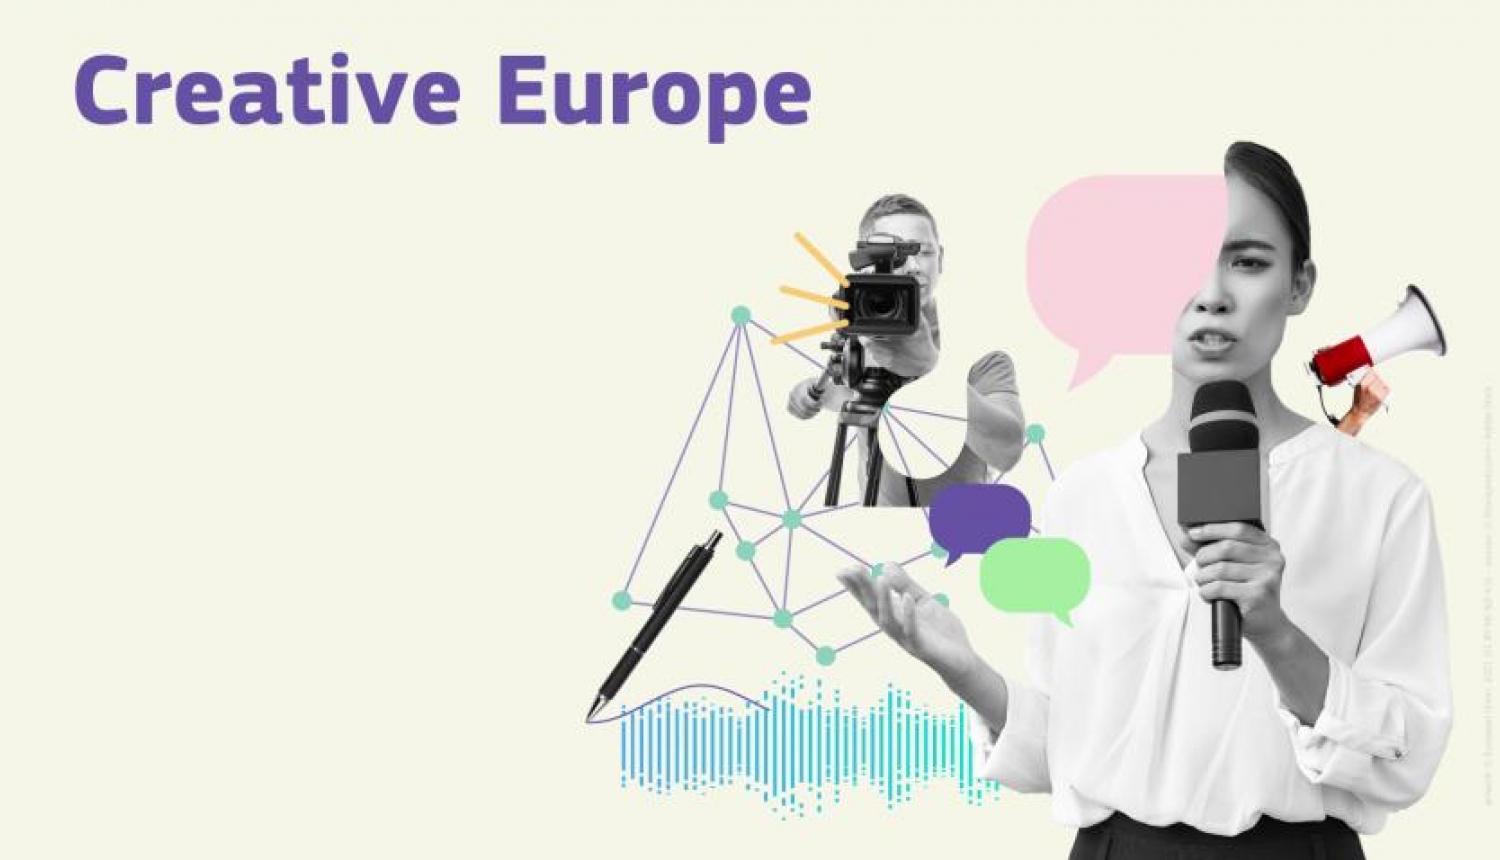 Radošās Eiropas starpnozaru atzara uzsaukumu vizuālais materiāls, kurā attēlota žurnāliste ar mikrofonu, žurnālists ar kameru, ģeometriskās figūras.